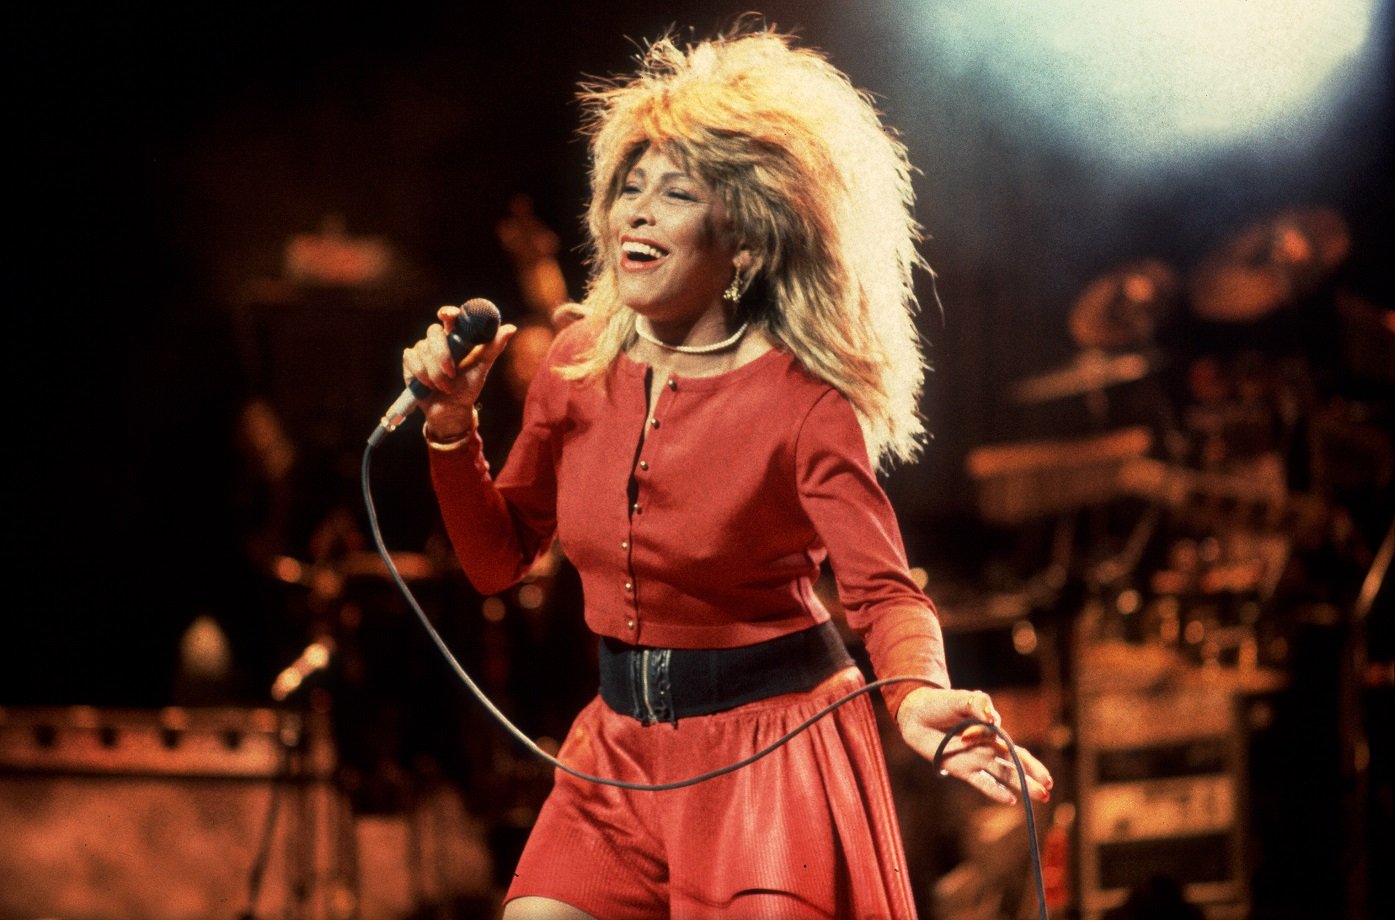  តើ Tina Turner បានចាកចេញពីឆន្ទៈទេ? នេះជារបៀបដែលមរតក 300 លានដុល្លាររបស់ Queen Of Rock នឹងត្រូវបែងចែក